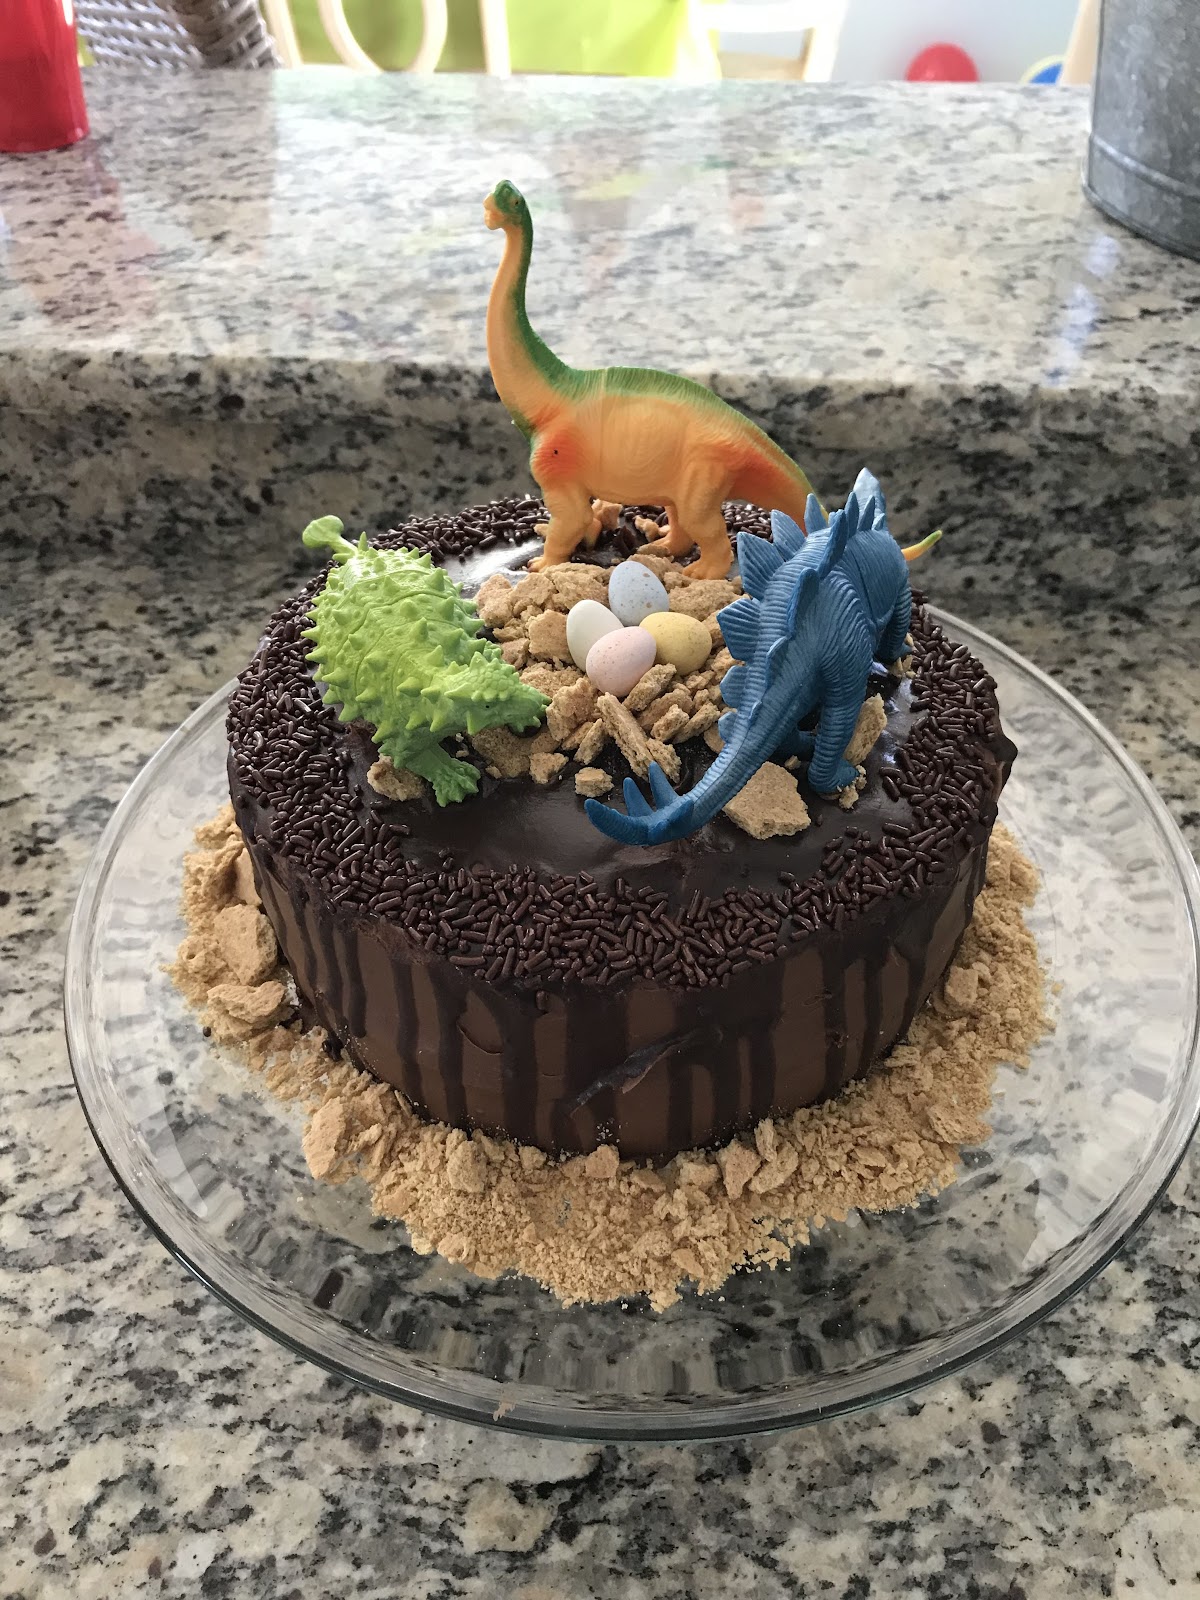 Dinosaur Birthday Cakes